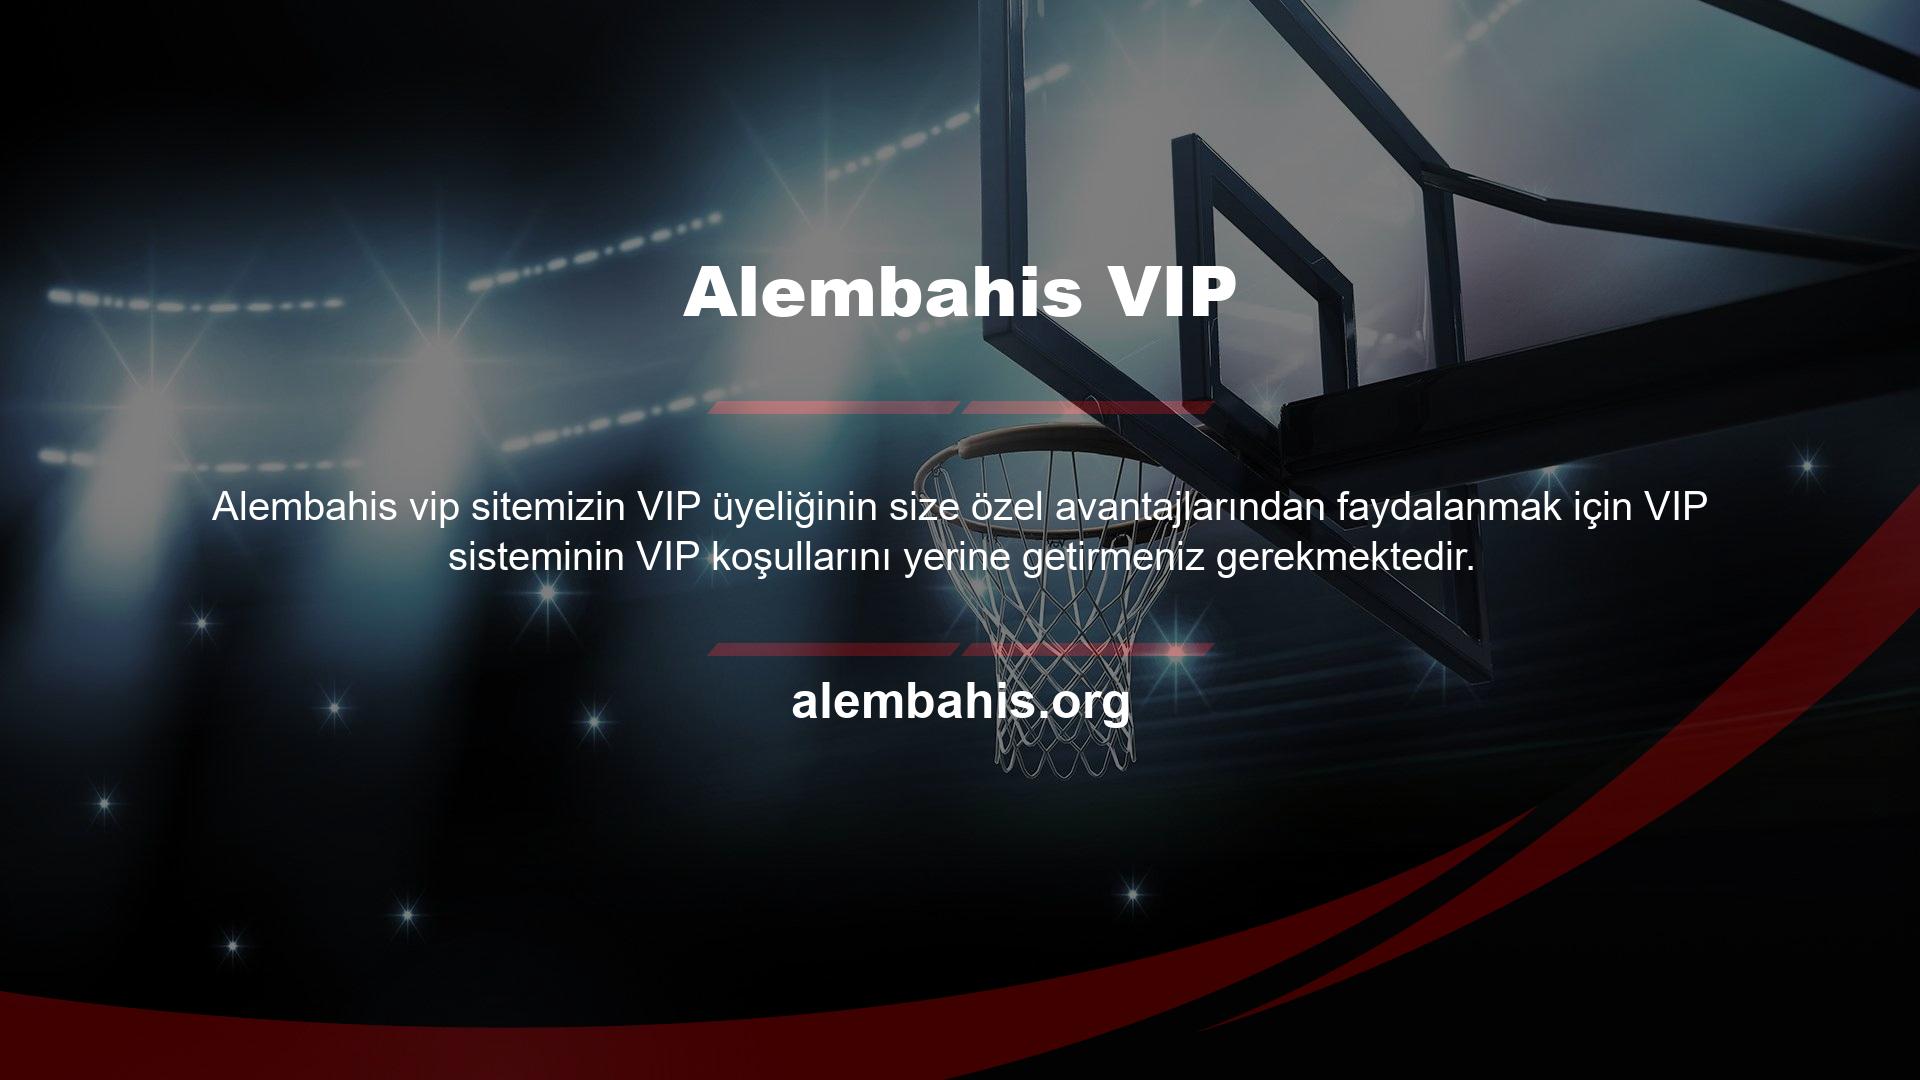 Yüksek yatırım yapan müşterilerimiz bir süre sonra Alembahis VIP hizmetinin VIP hizmetine hak kazanırlar ve istedikleri VIP ayrıcalıklarından yararlanırlar